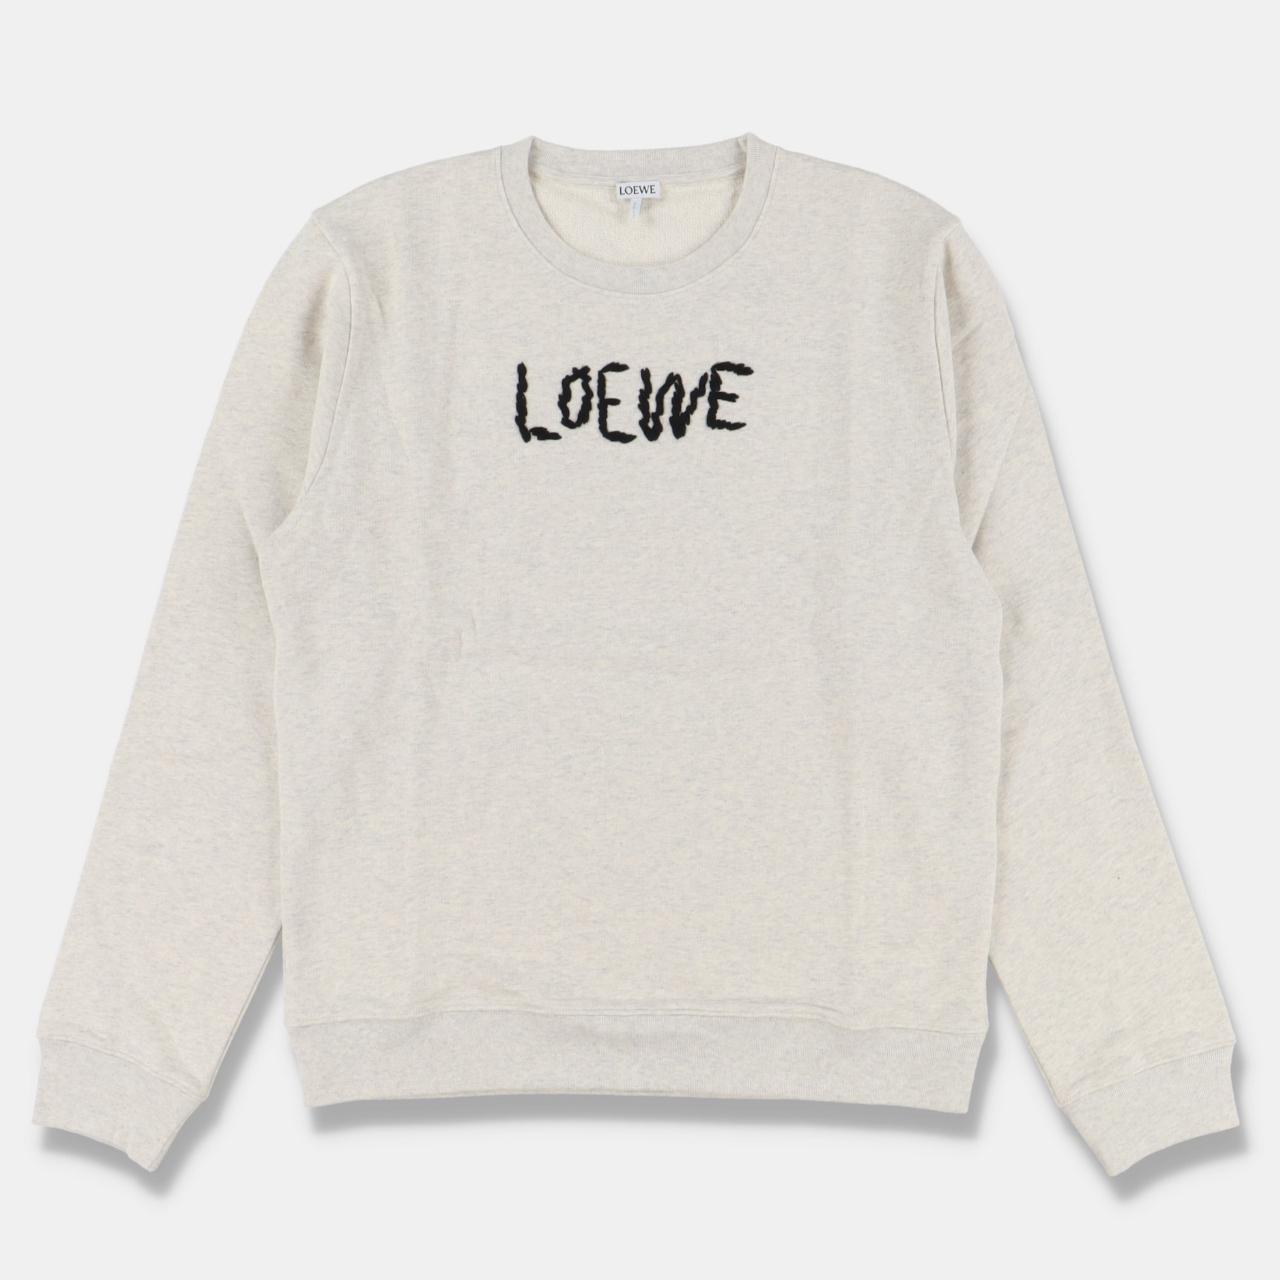 Product Image 1 - Loewe Grey Embroidered Logo Sweatshirt

-Size